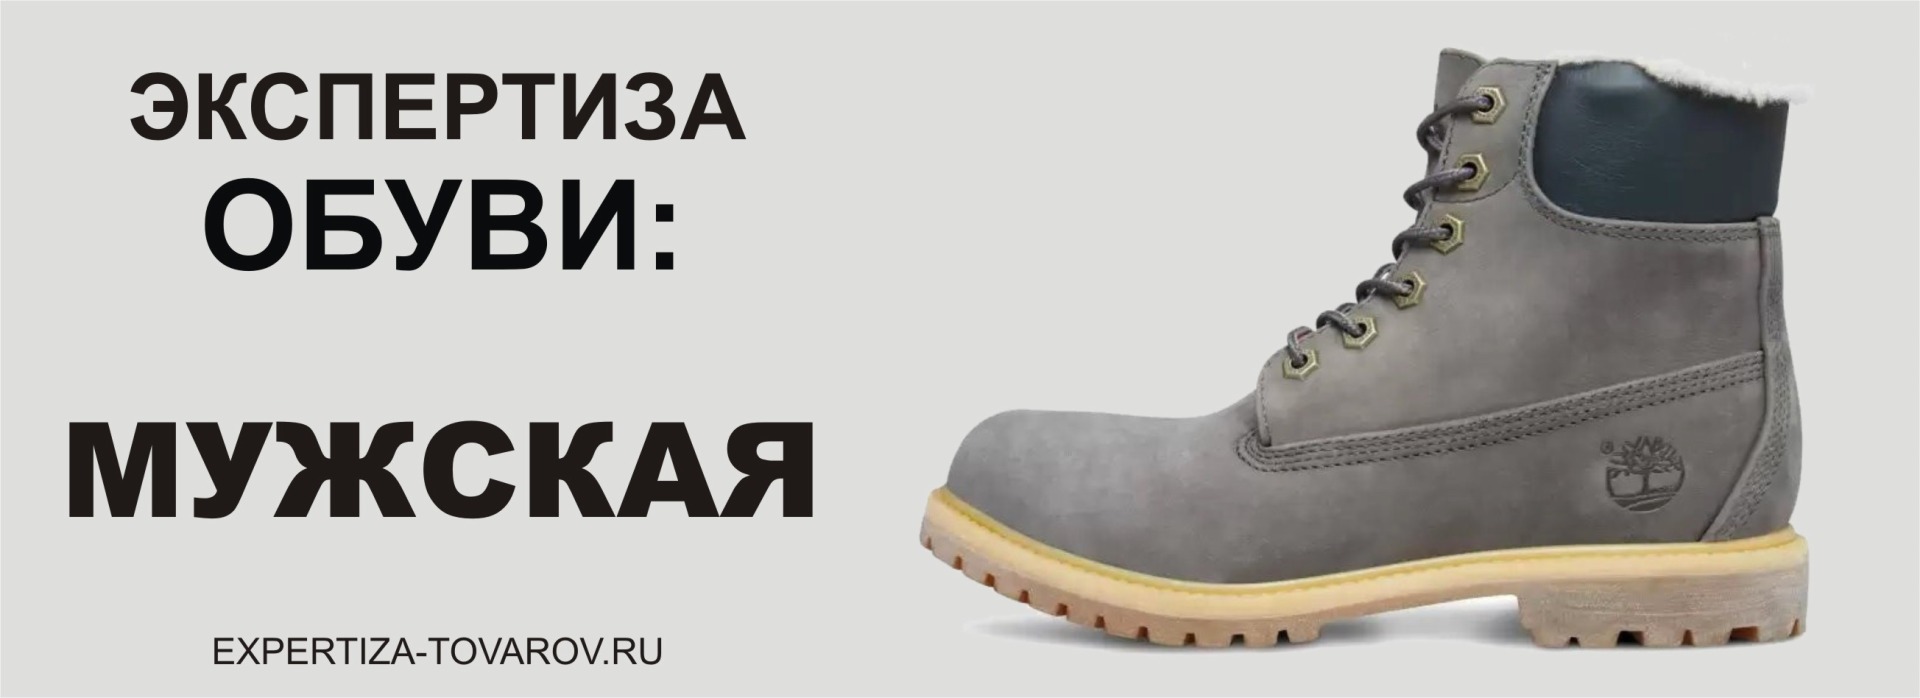 Независимая экспертиза обуви в Тамбове Санкт Петербурге для суда внесудебная экспертиза досудебная экспертиза обуви